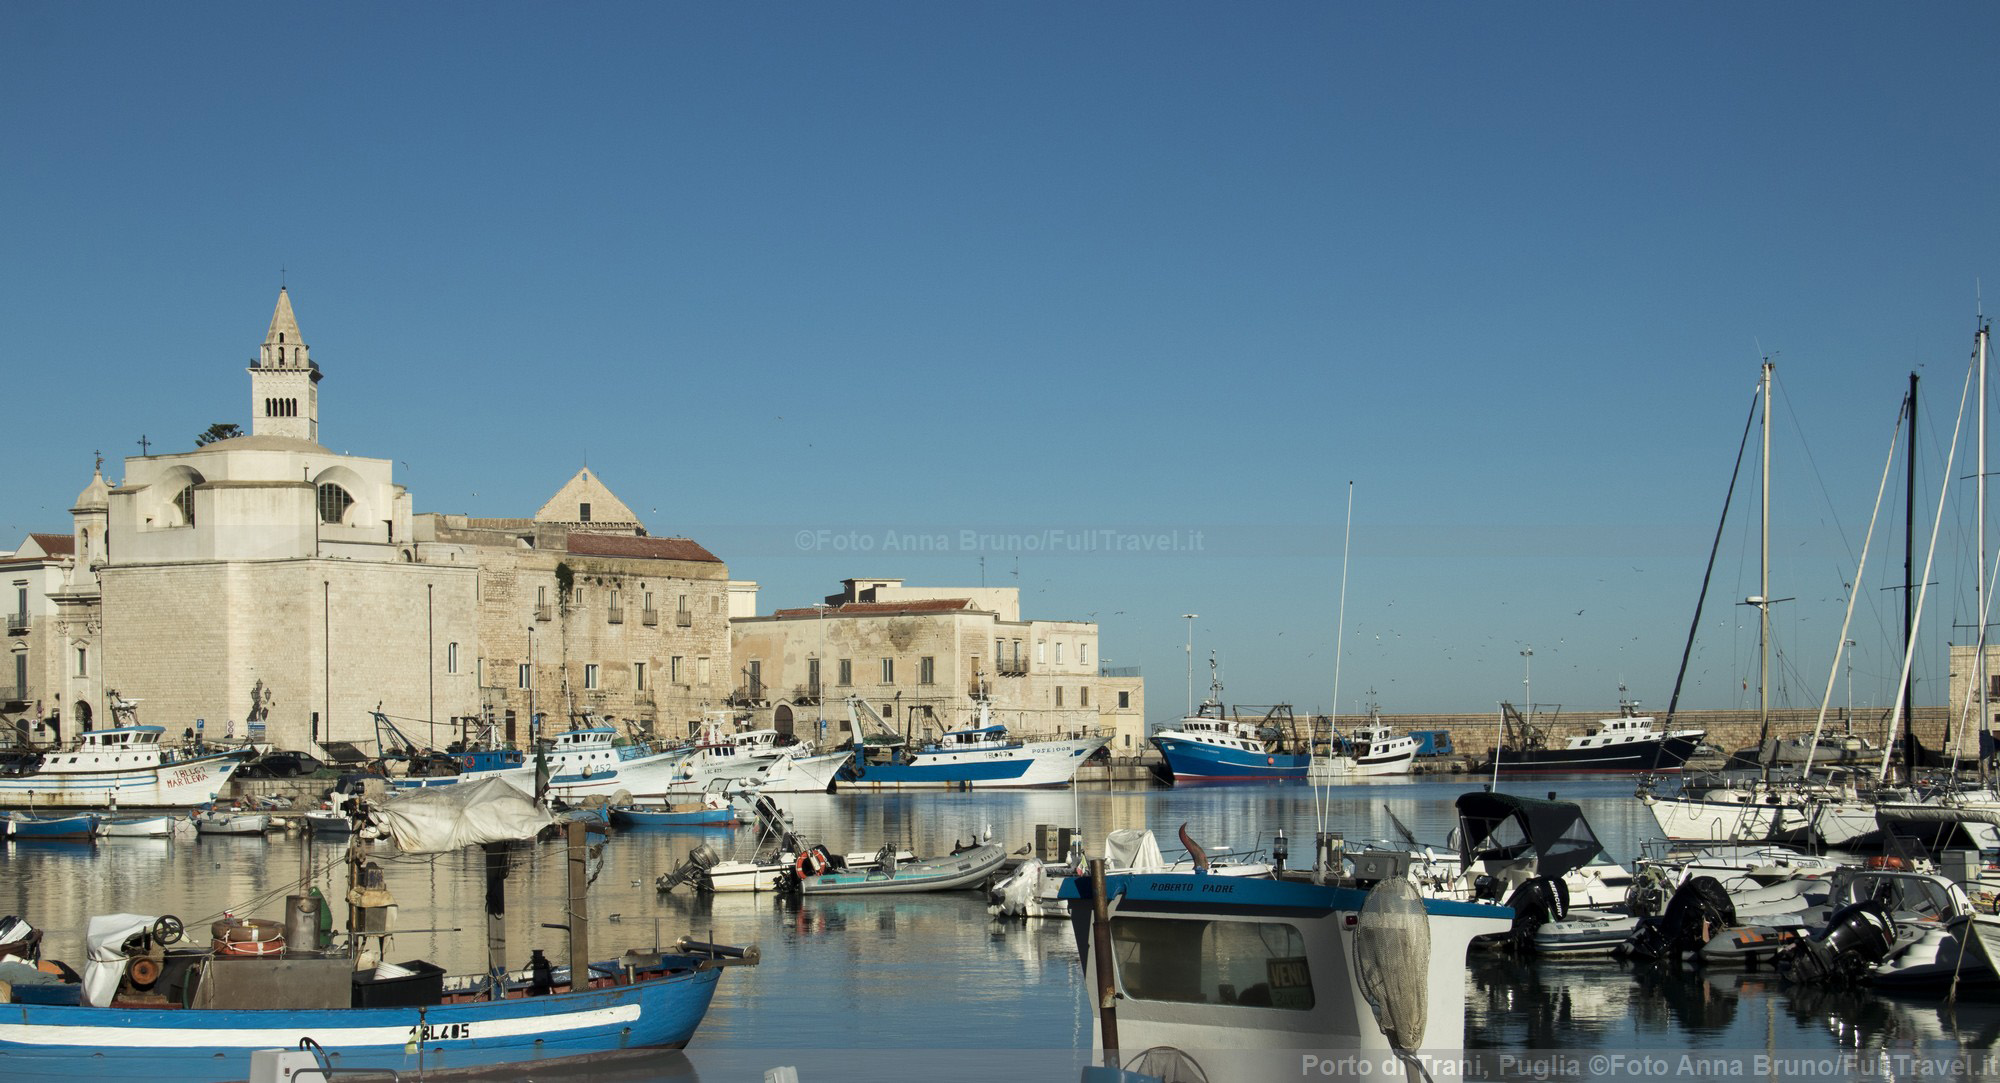 Porto di Trani, Puglia ©Foto Anna Bruno/FullTravel.it